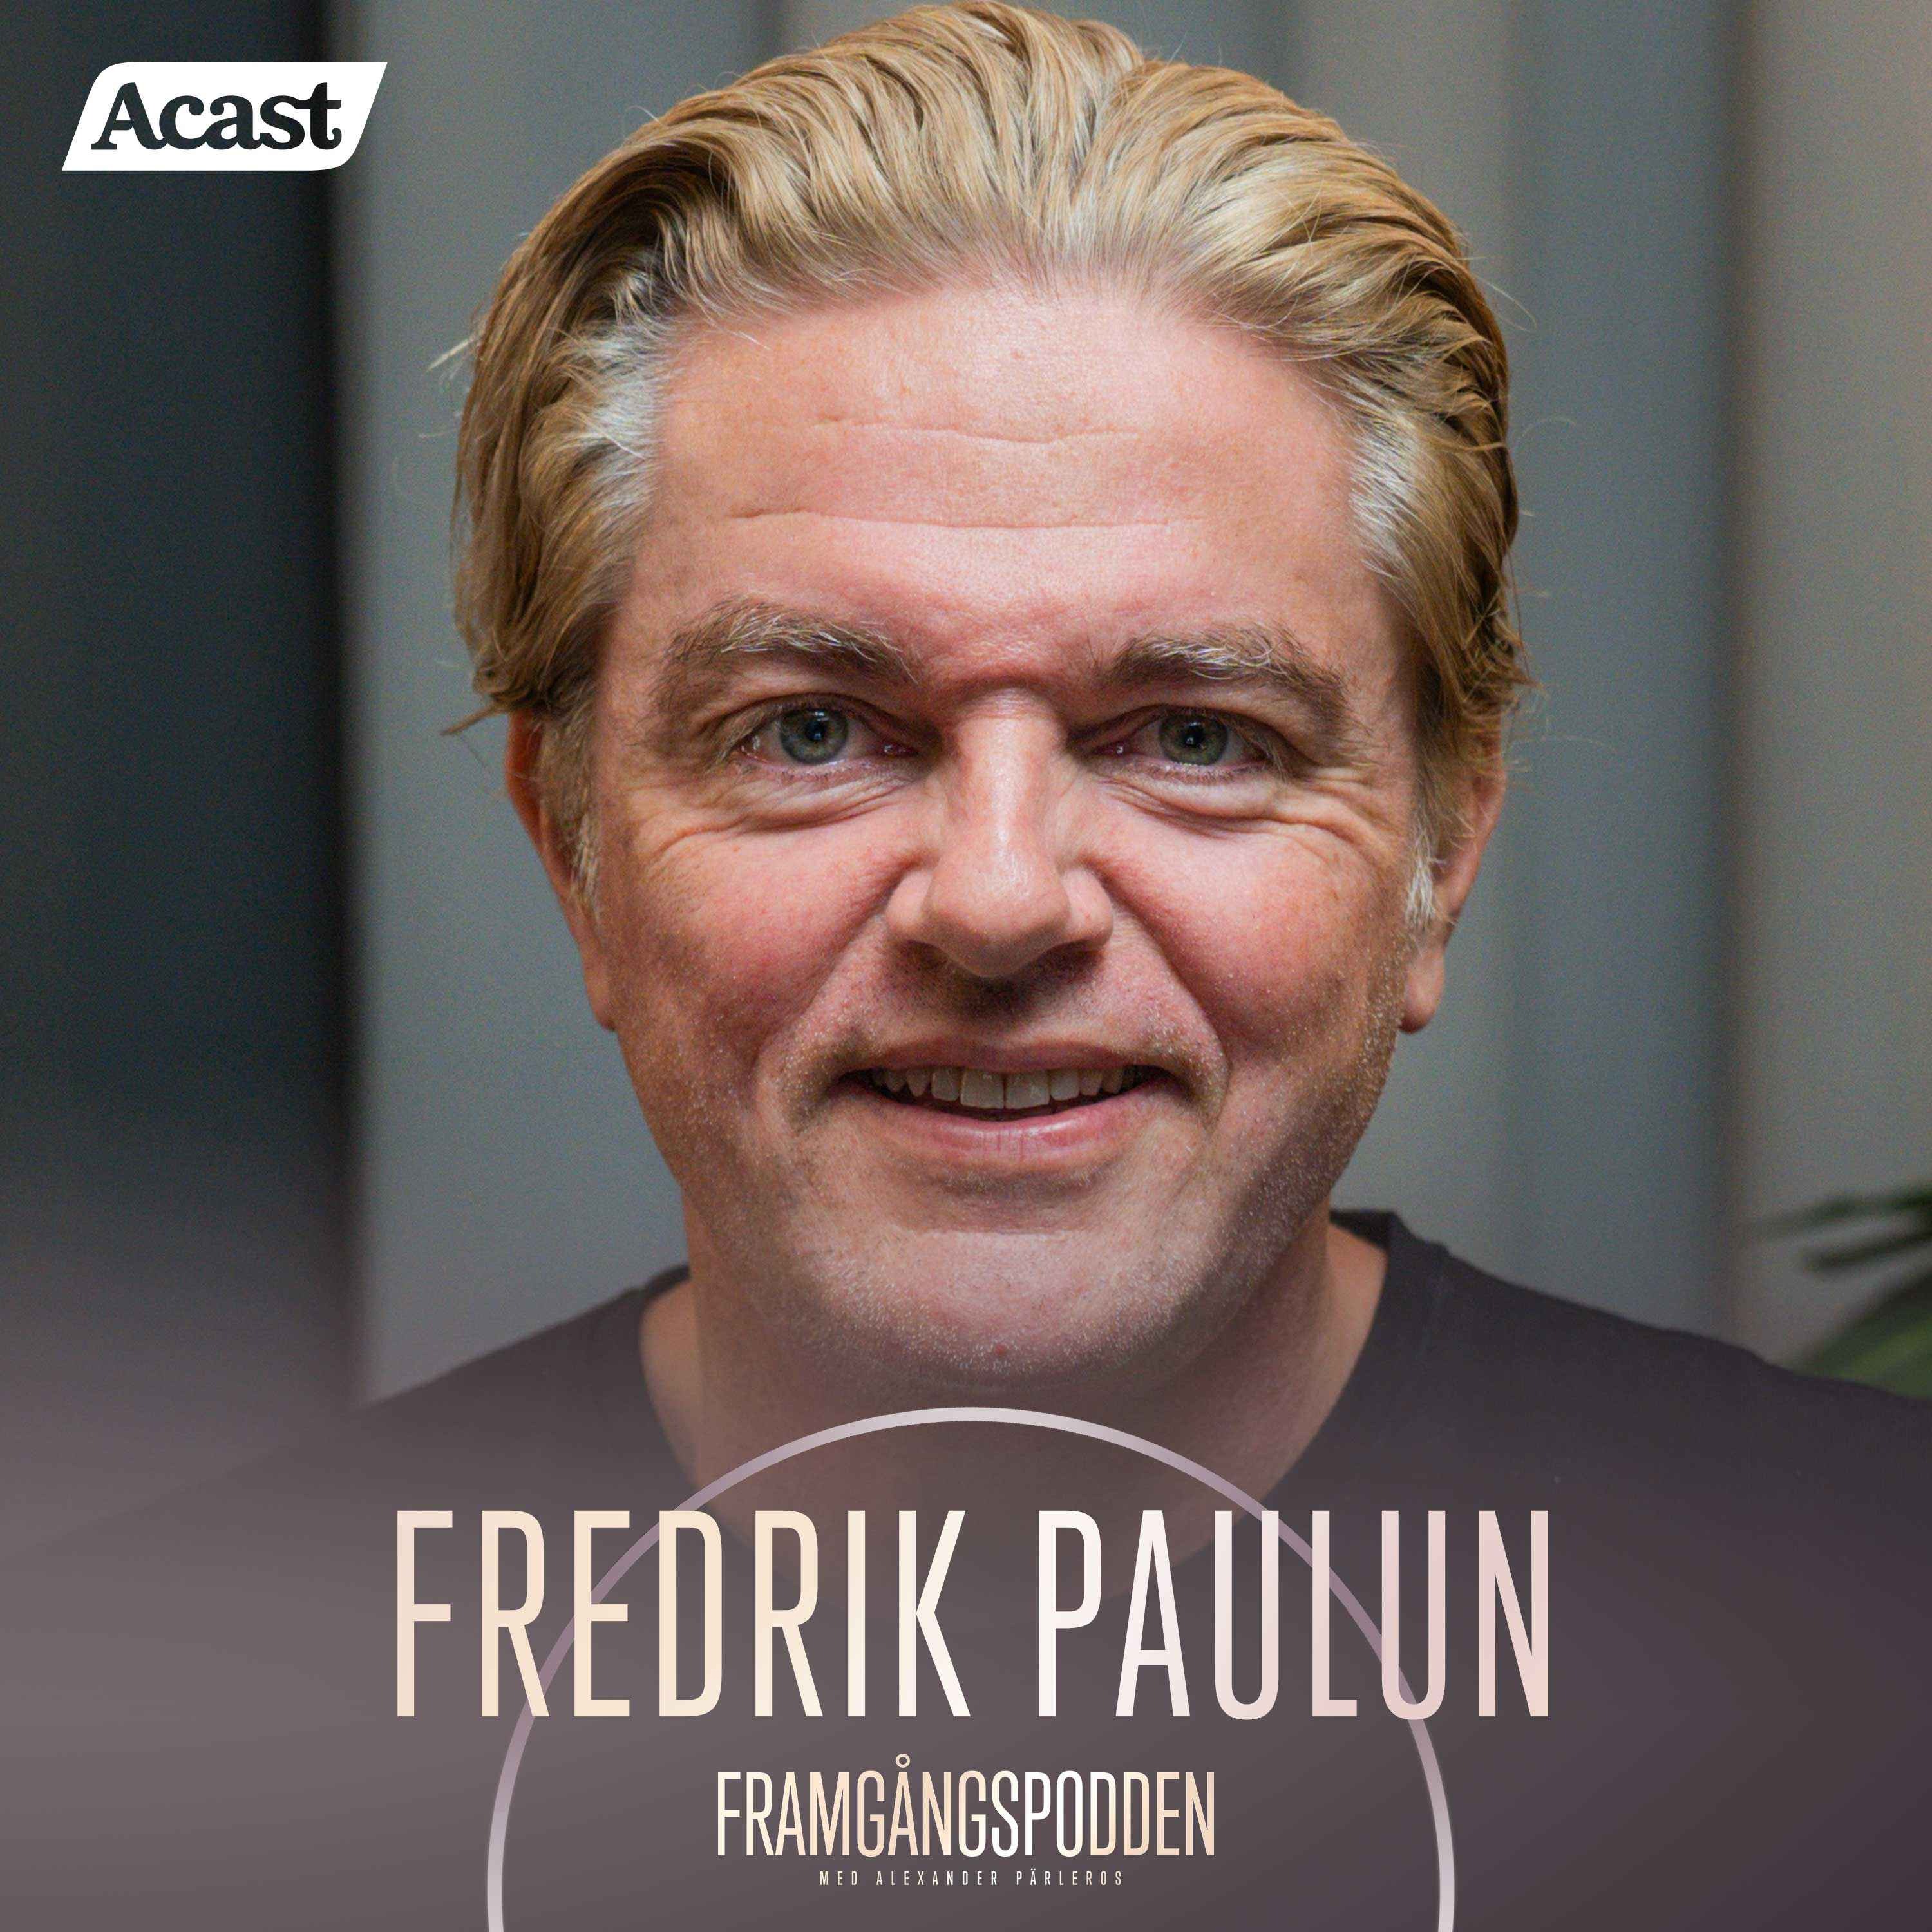 618. Fredrik Paulún - Hälsoguruns väg till ett friskt och rikt liv, Original